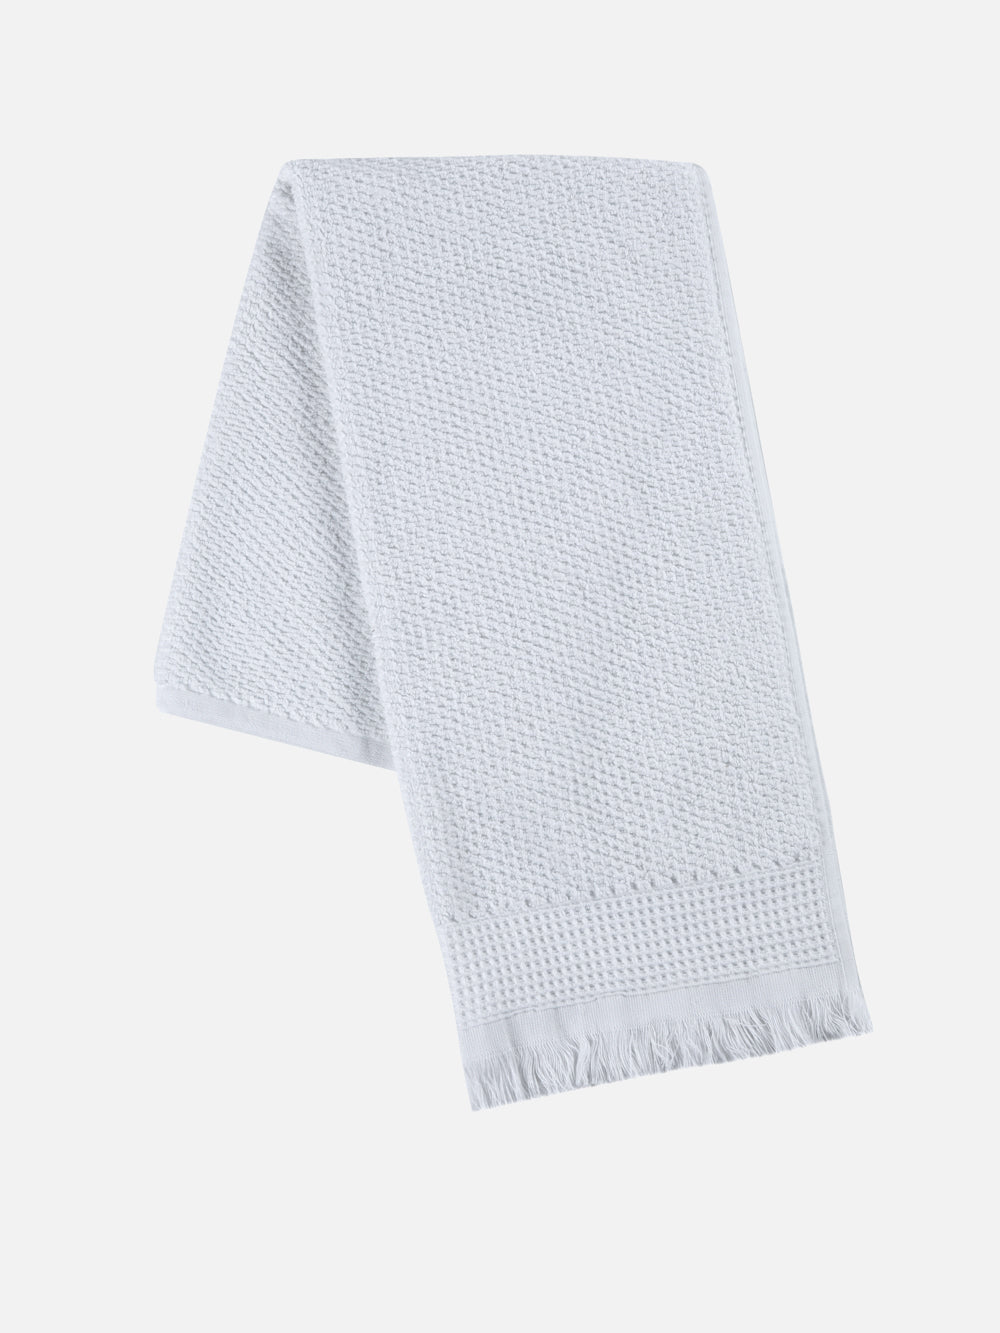 Relax Piqu Hand Towel